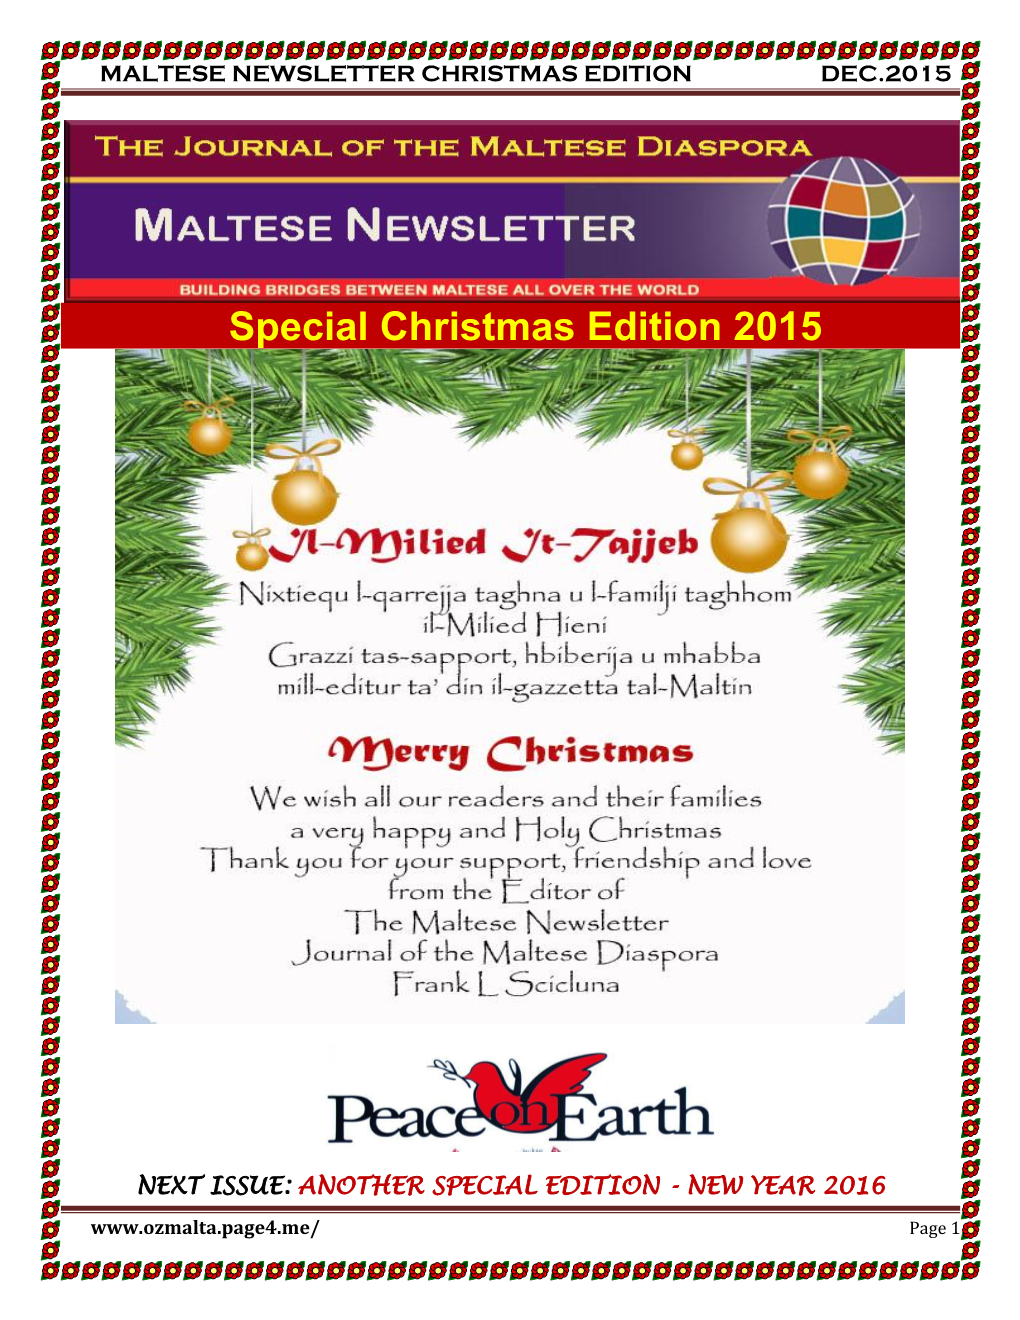 Maltese Newsletter Christmas Edition Dec.2015